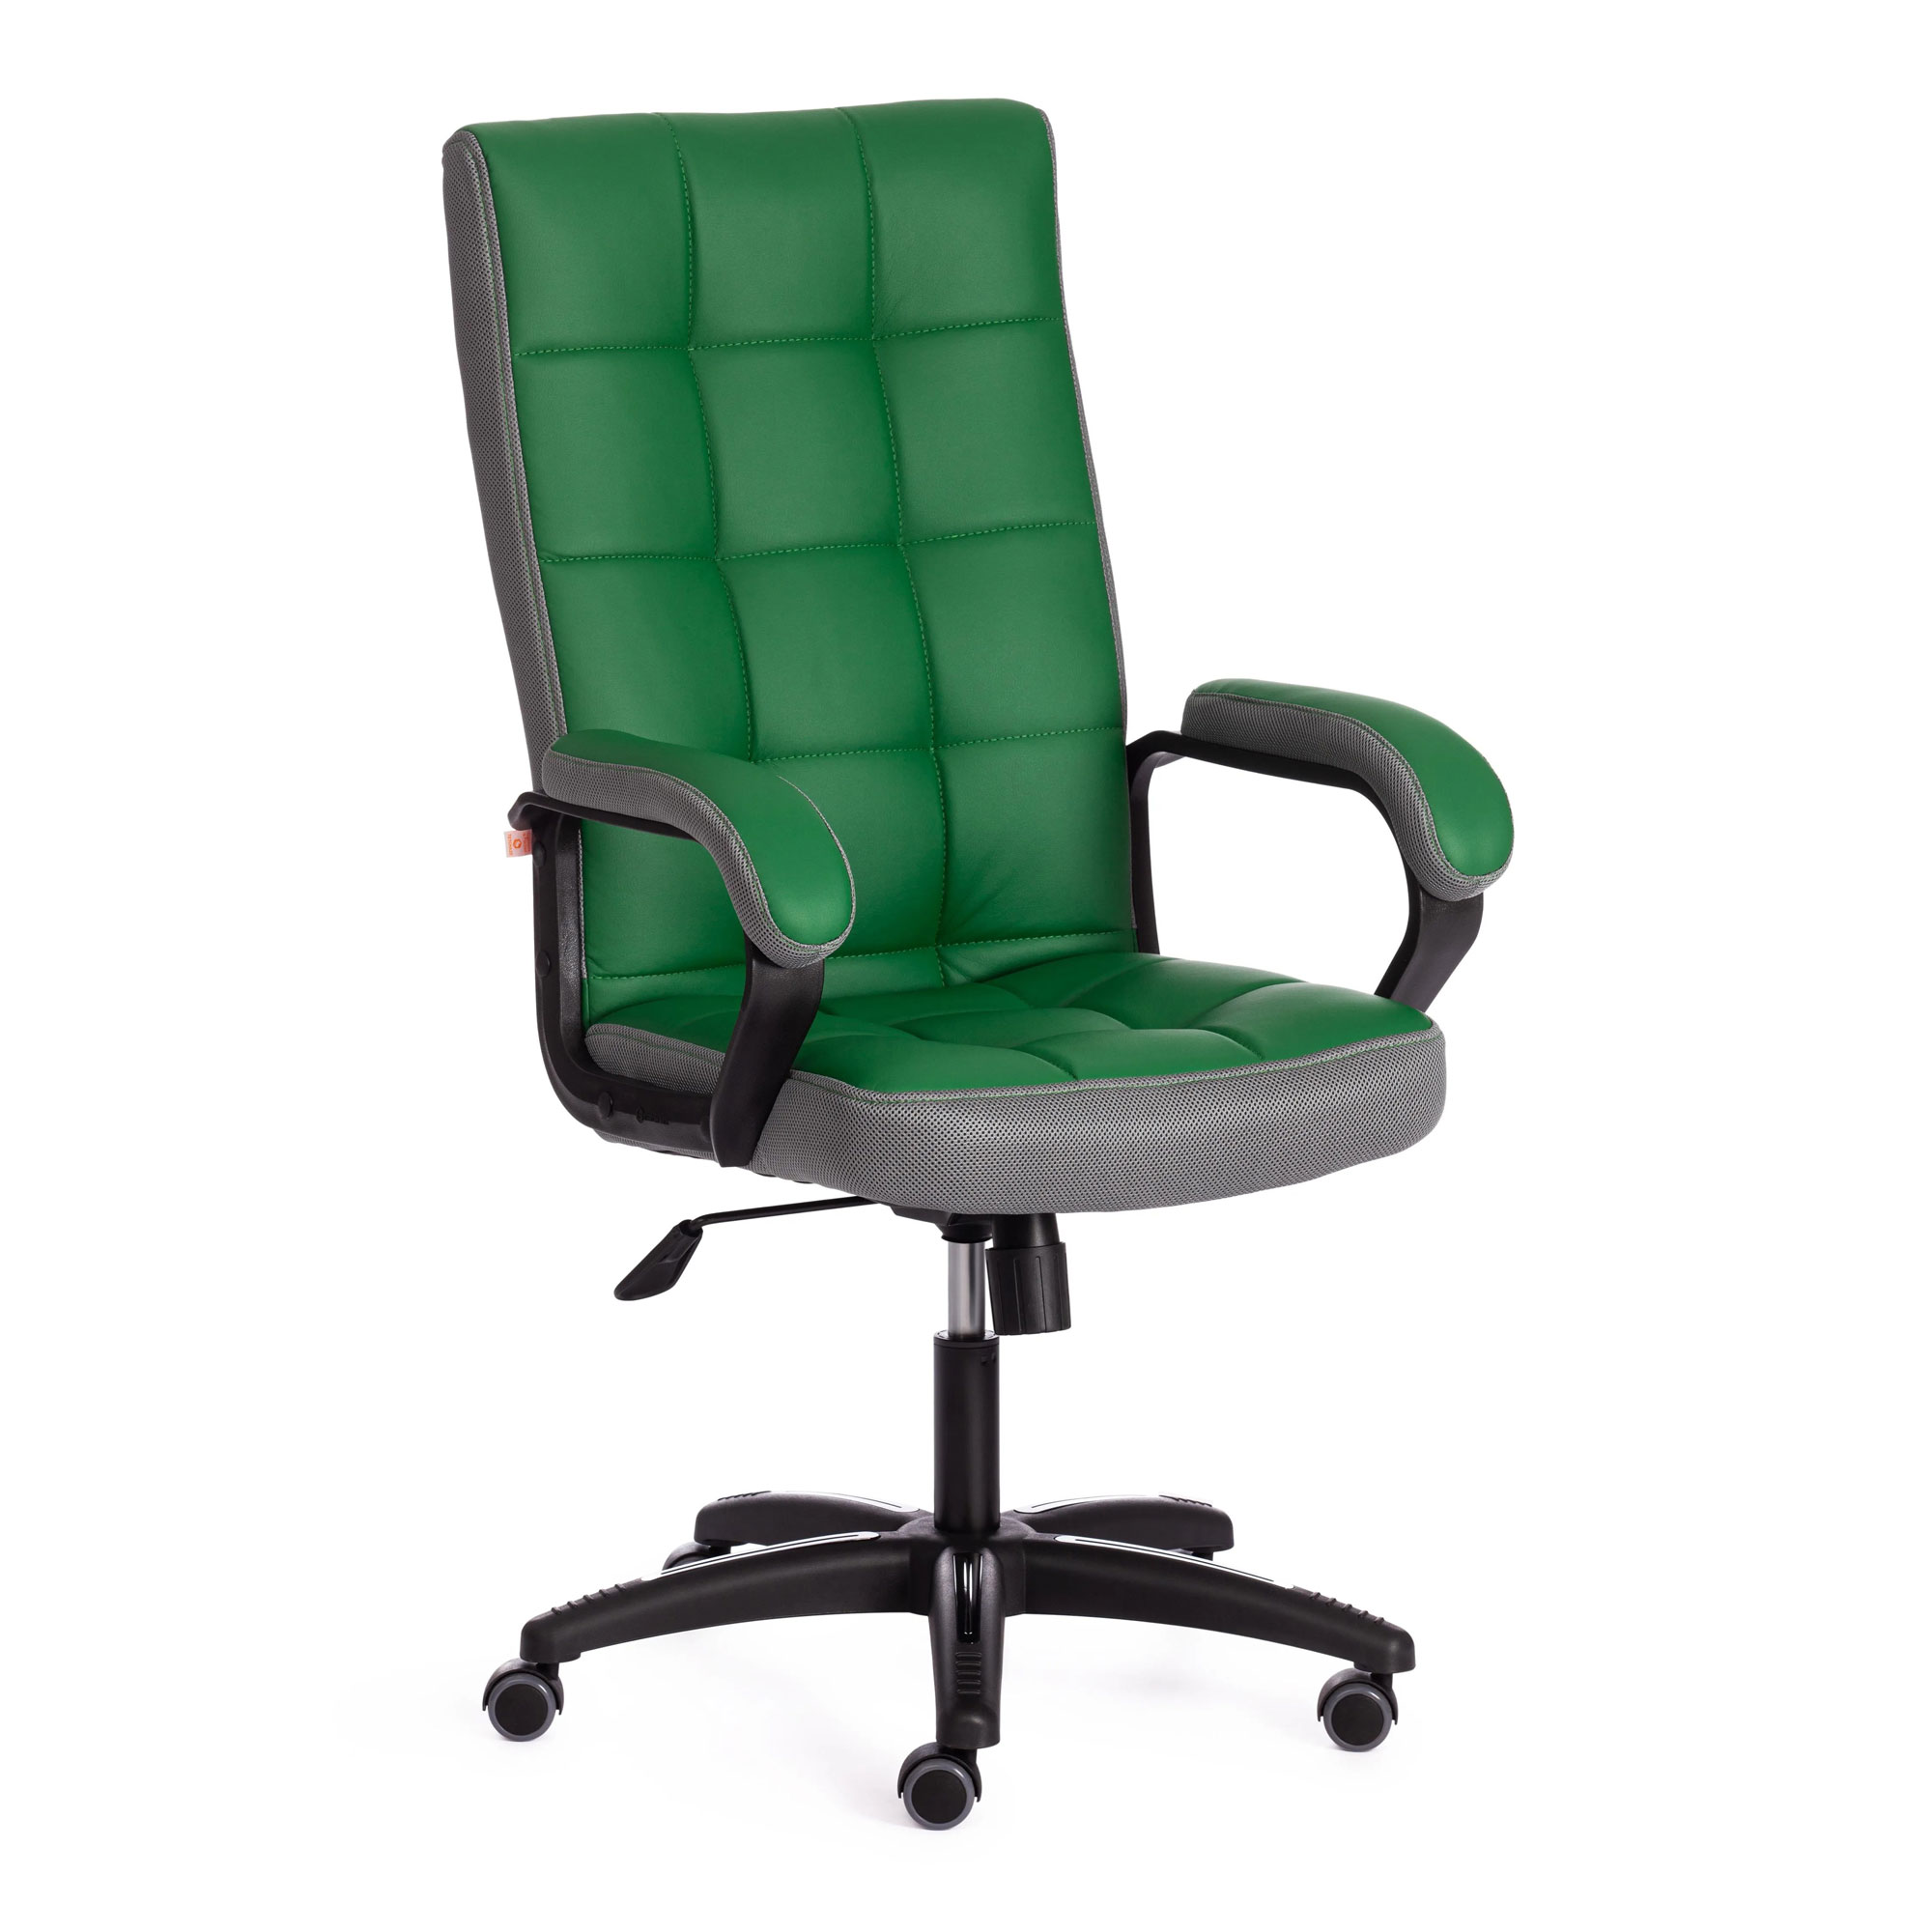 Кресло компьютерное TC искусственная кожа зелёное с серым 61х47х126 см кресло компьютерное tc driver искусственная кожа чёрное 55х49х126 см